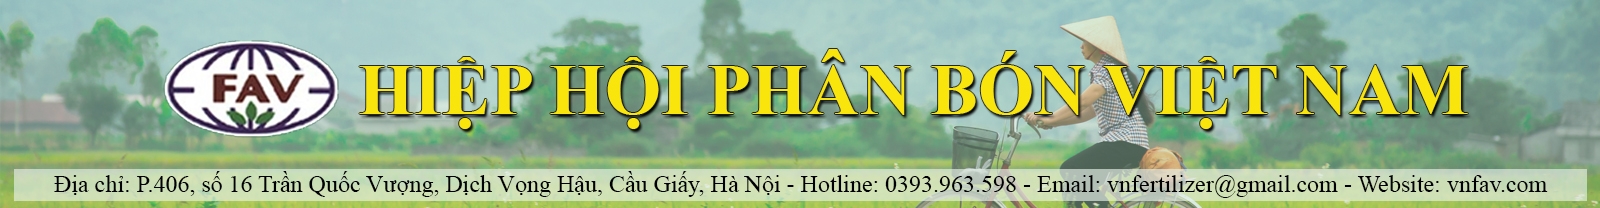 Vài nét về Hiệp hội Phân bón Việt Nam